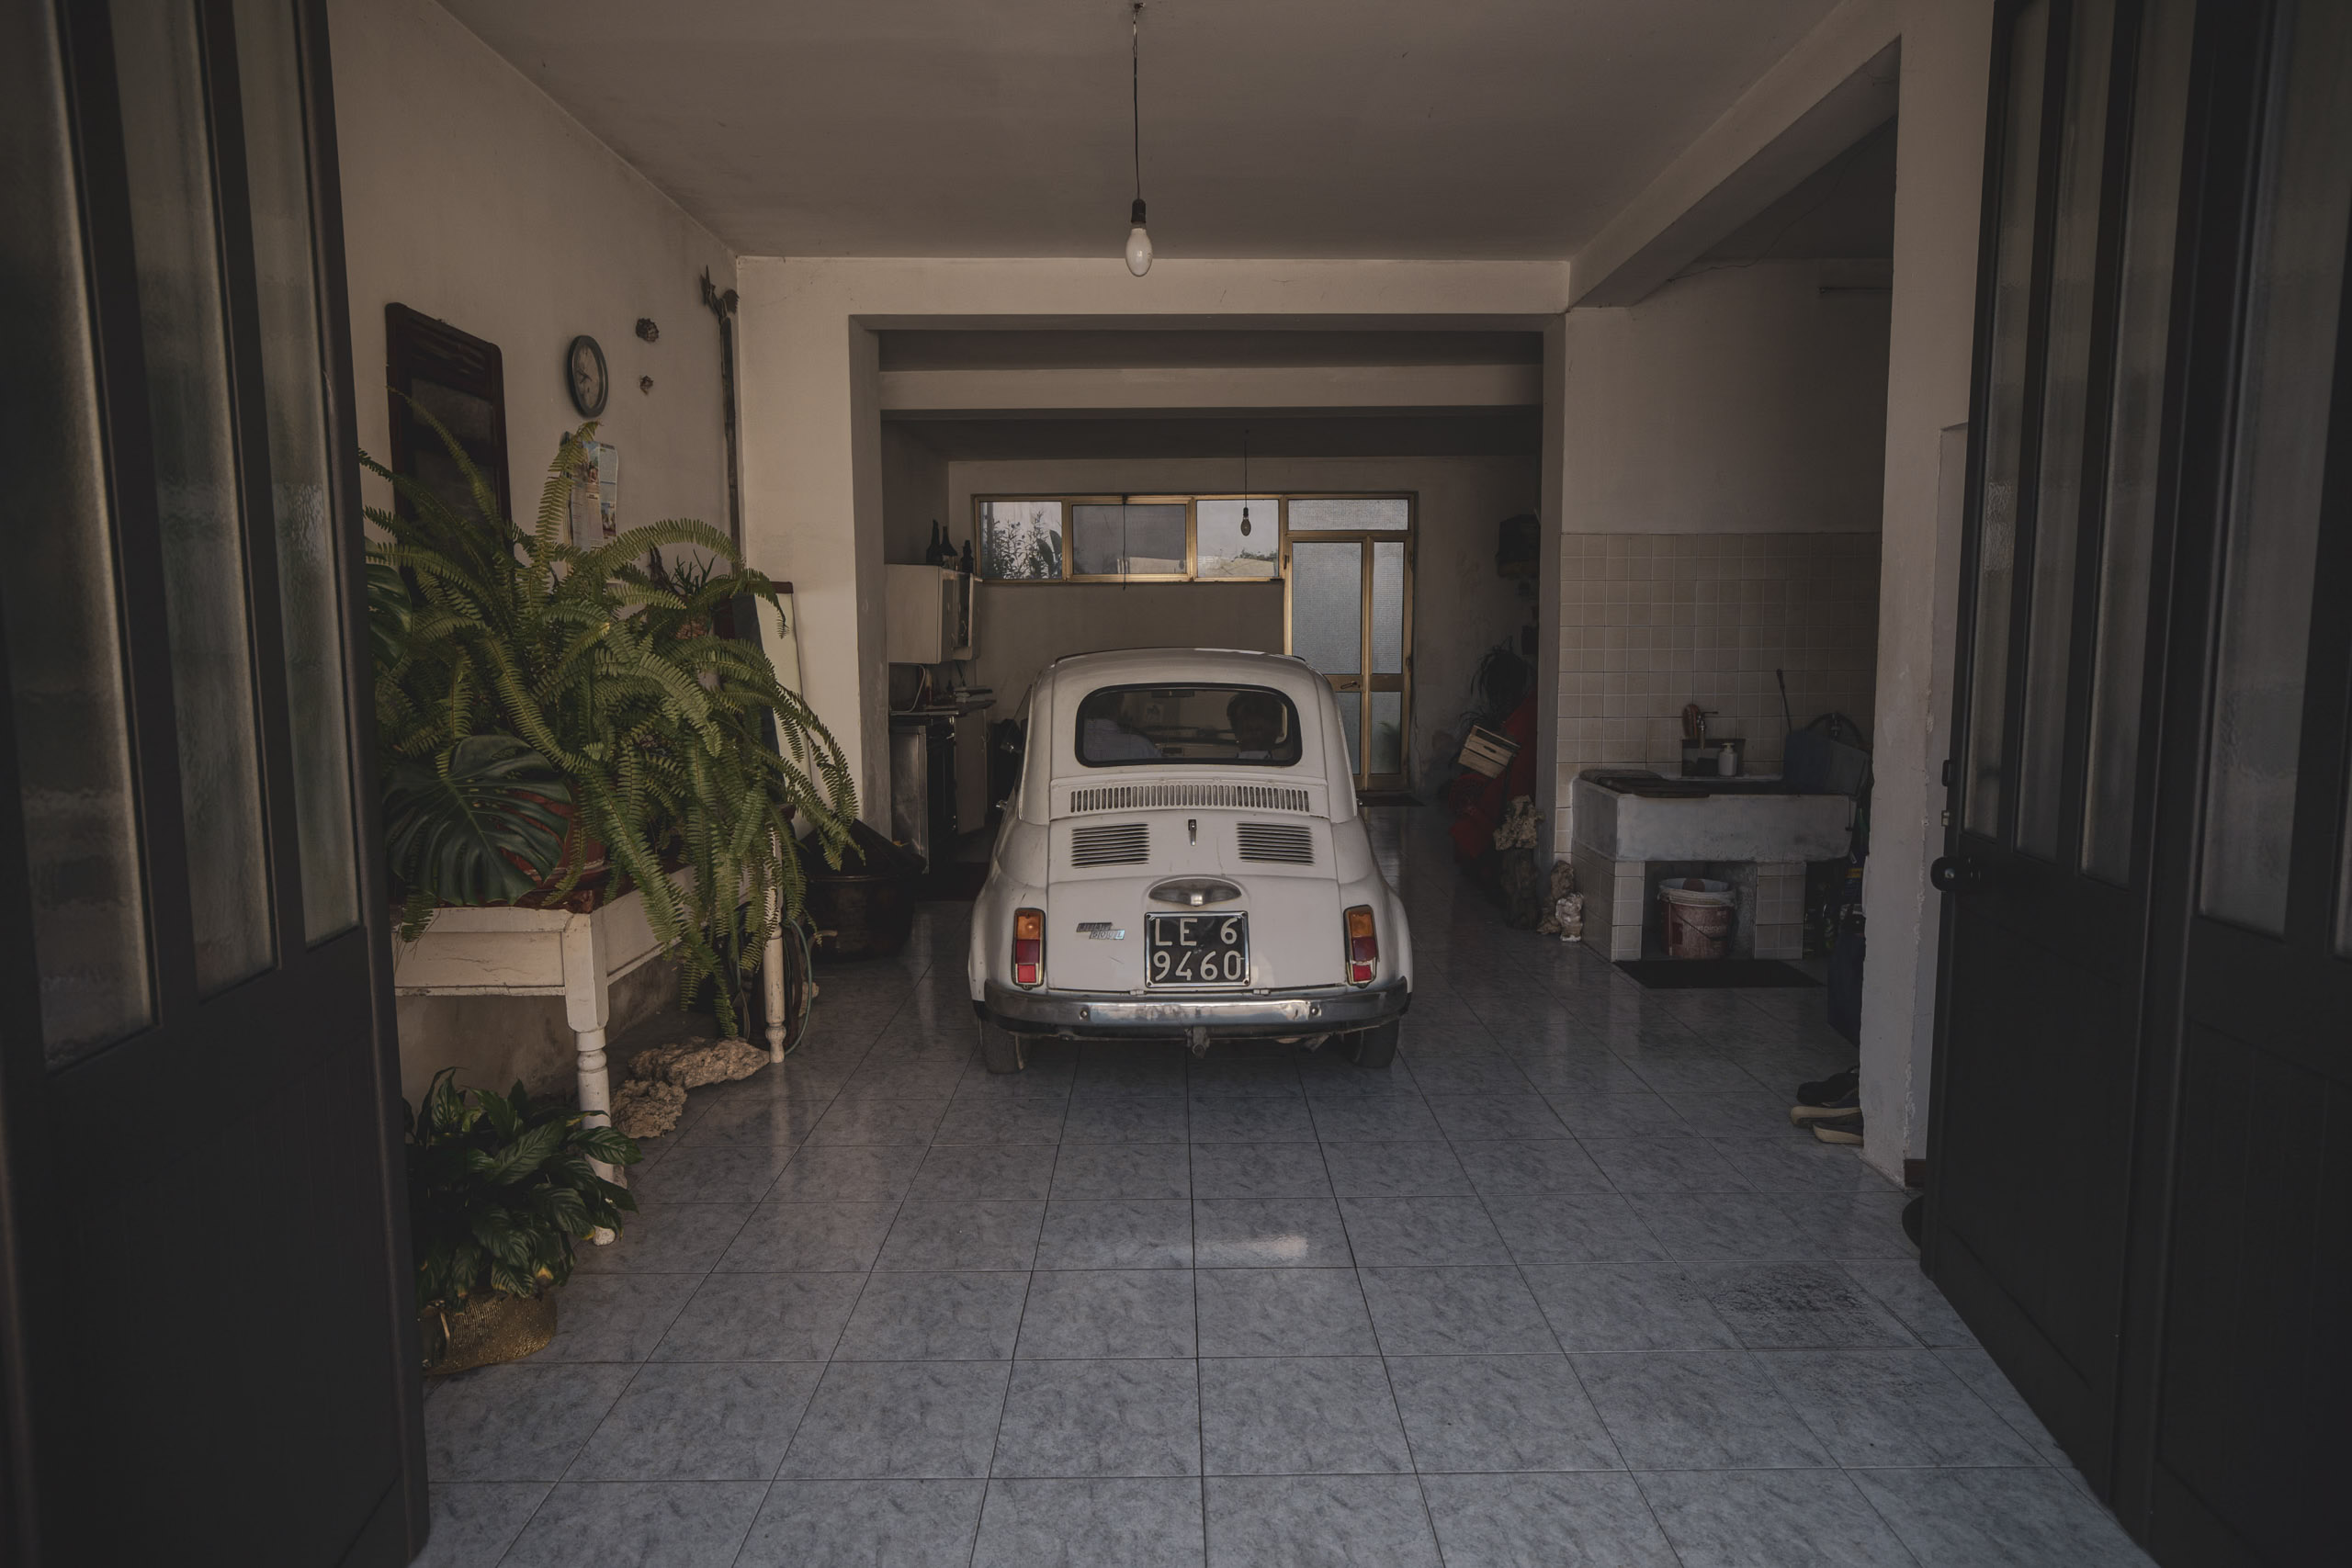 Ein weißer Oldtimer, der in einer geräumigen, gefliesten Garage geparkt ist. Die offenen Türen führen in einen sonnigen Innenhof, und links sind Zimmerpflanzen zu sehen. © Fotografie Tomas Rodriguez